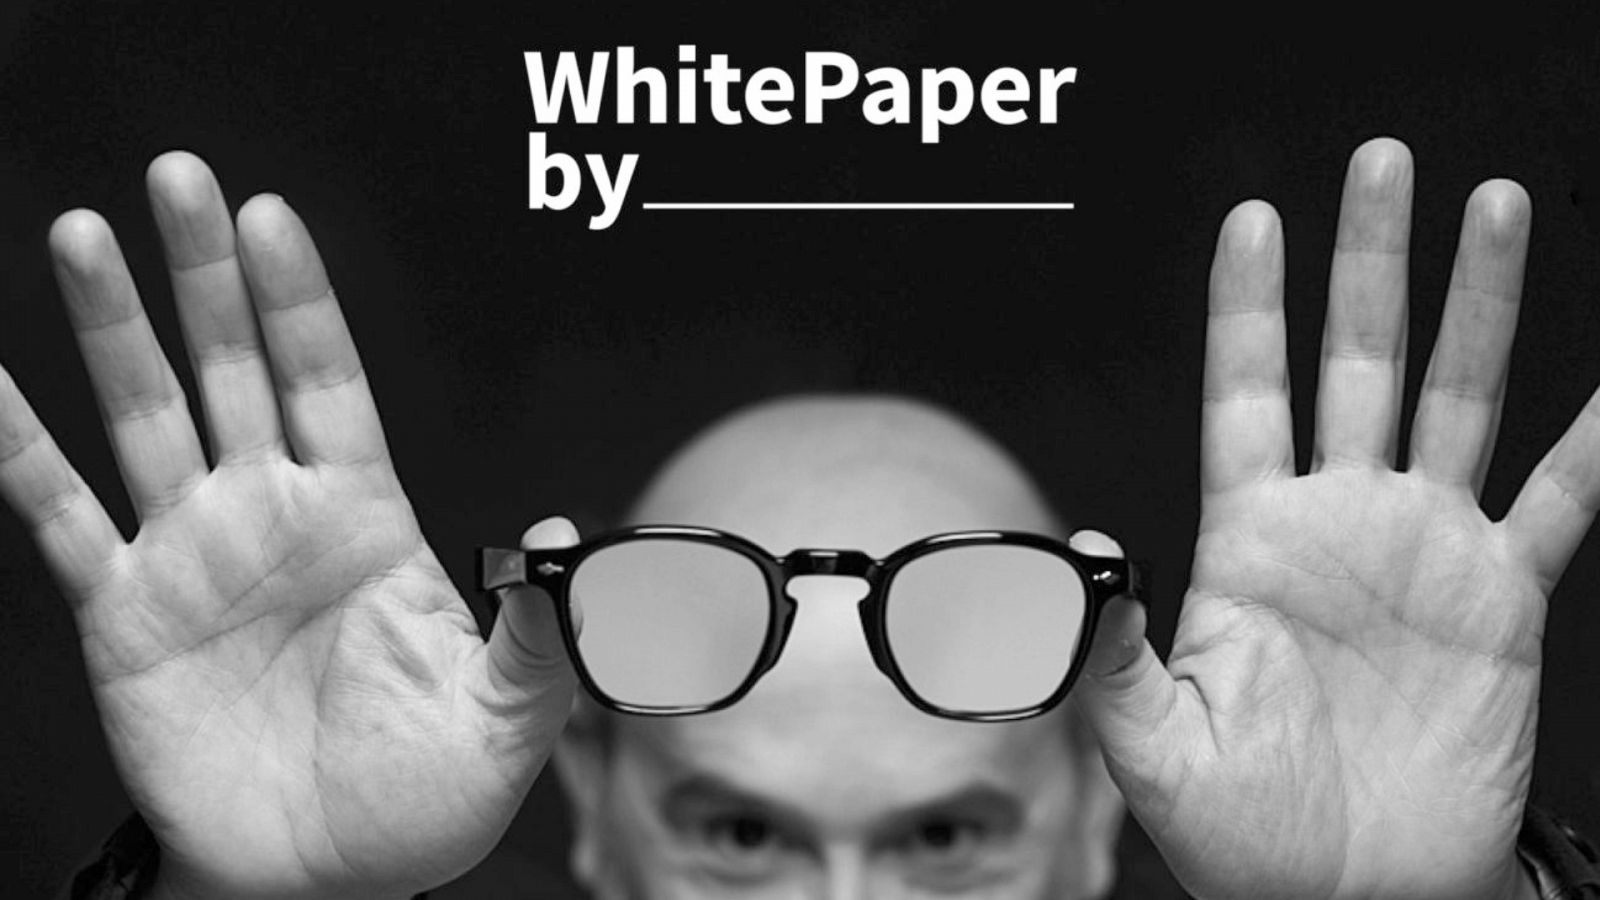 The White Paper By: descubre un nuevo medio de moda, cultura y belleza